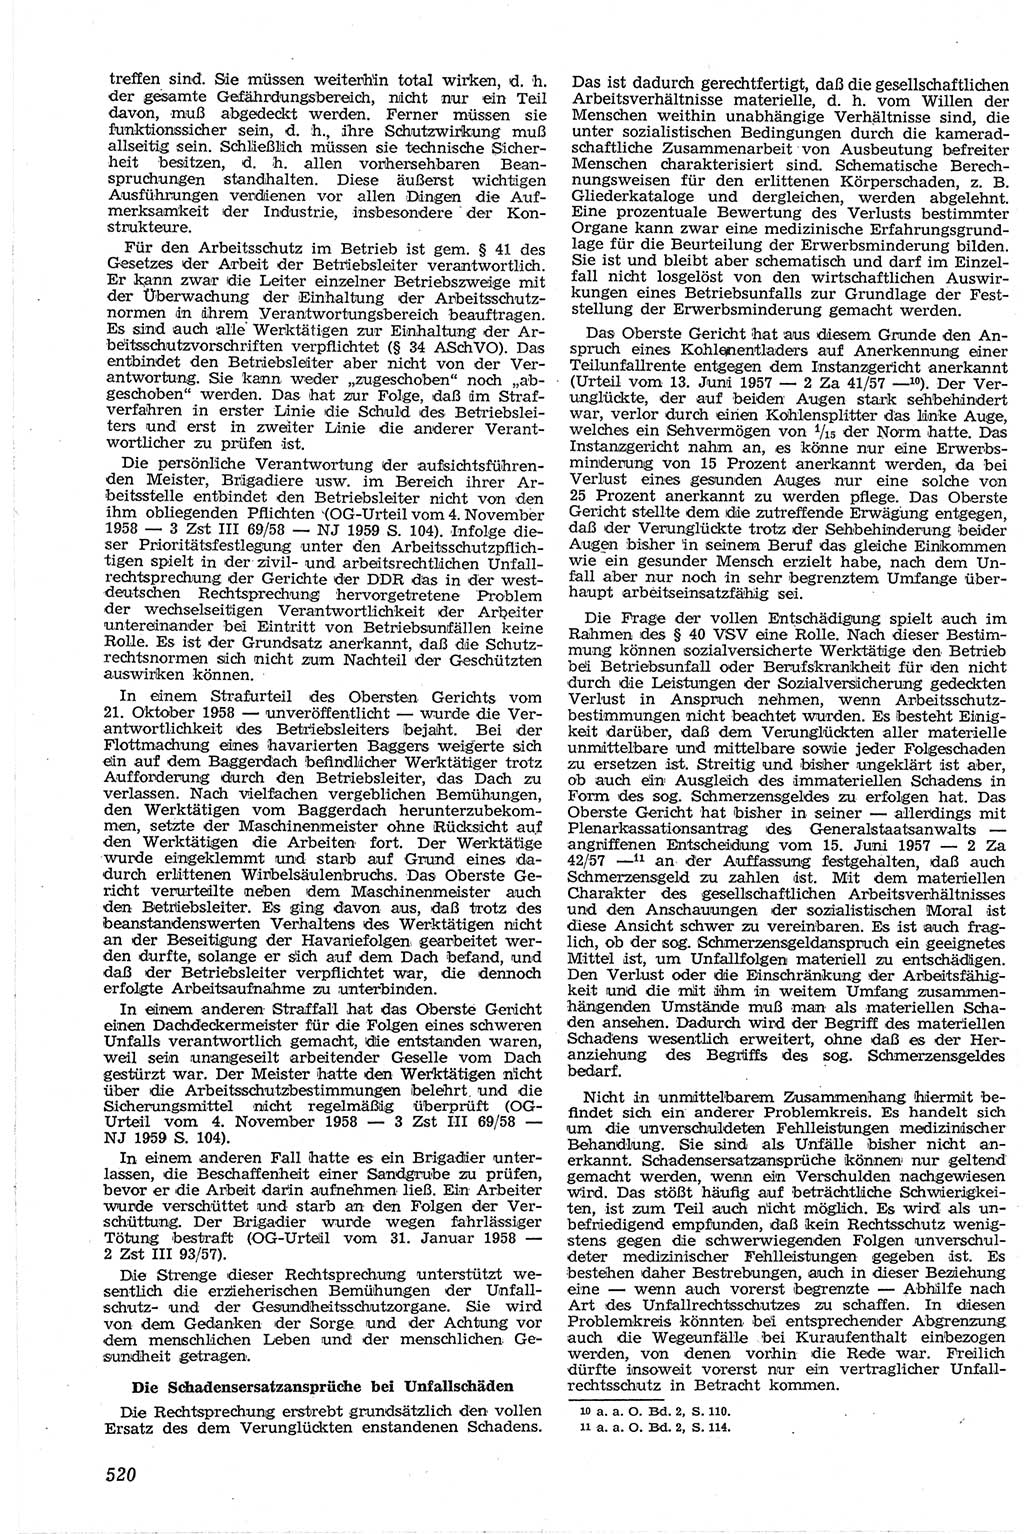 Neue Justiz (NJ), Zeitschrift für Recht und Rechtswissenschaft [Deutsche Demokratische Republik (DDR)], 13. Jahrgang 1959, Seite 520 (NJ DDR 1959, S. 520)